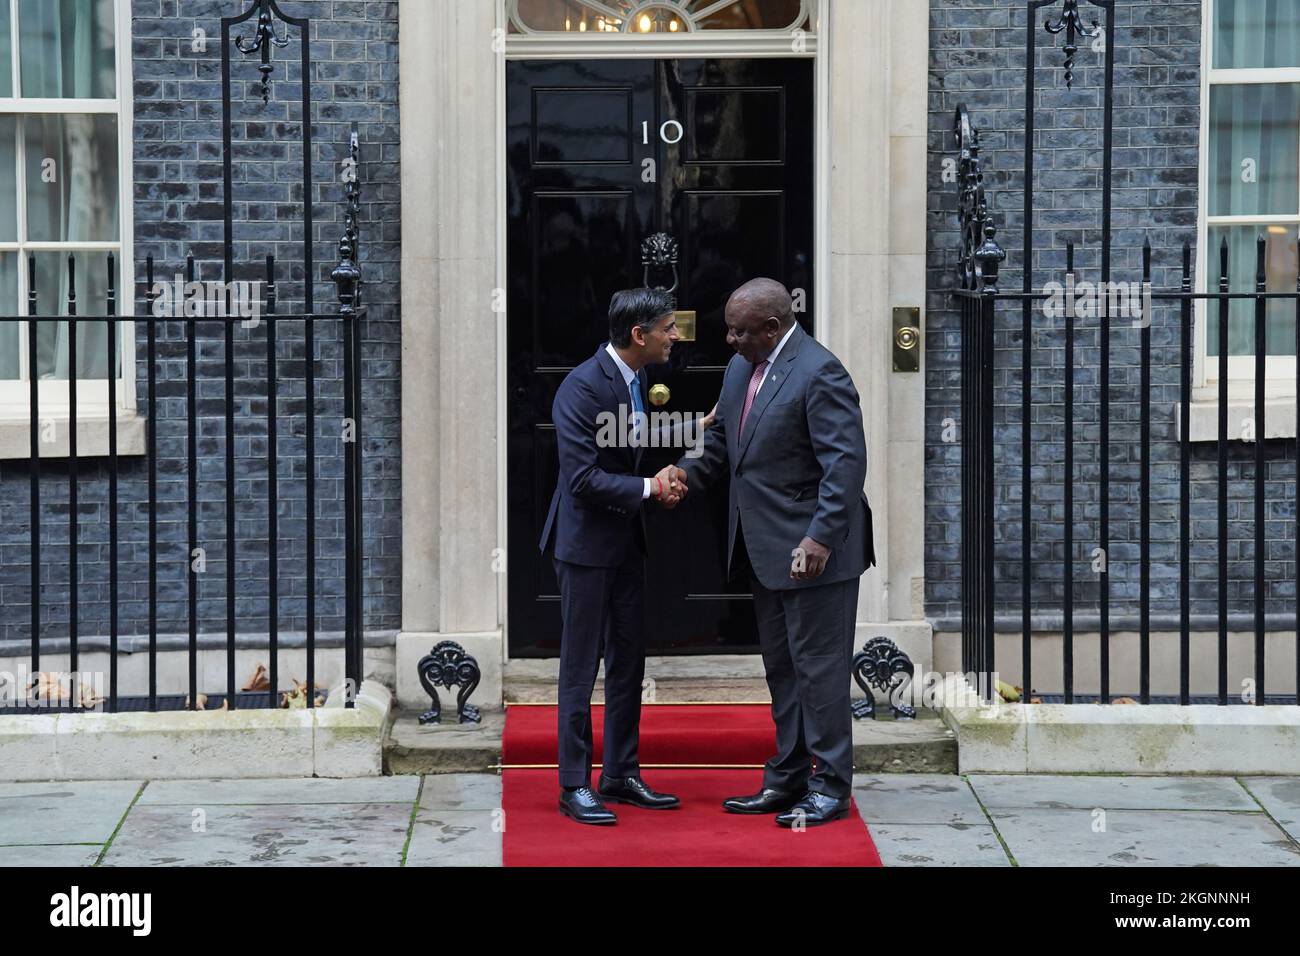 Le Premier ministre Rishi Sunak accueille le président de l'Afrique du Sud, Cyril Ramaphosa, à l'extérieur du 10 Downing Street, à Londres, avant une réunion bilatérale lors de sa visite d'État au Royaume-Uni. Date de la photo: Mercredi 23 novembre 2022. Banque D'Images